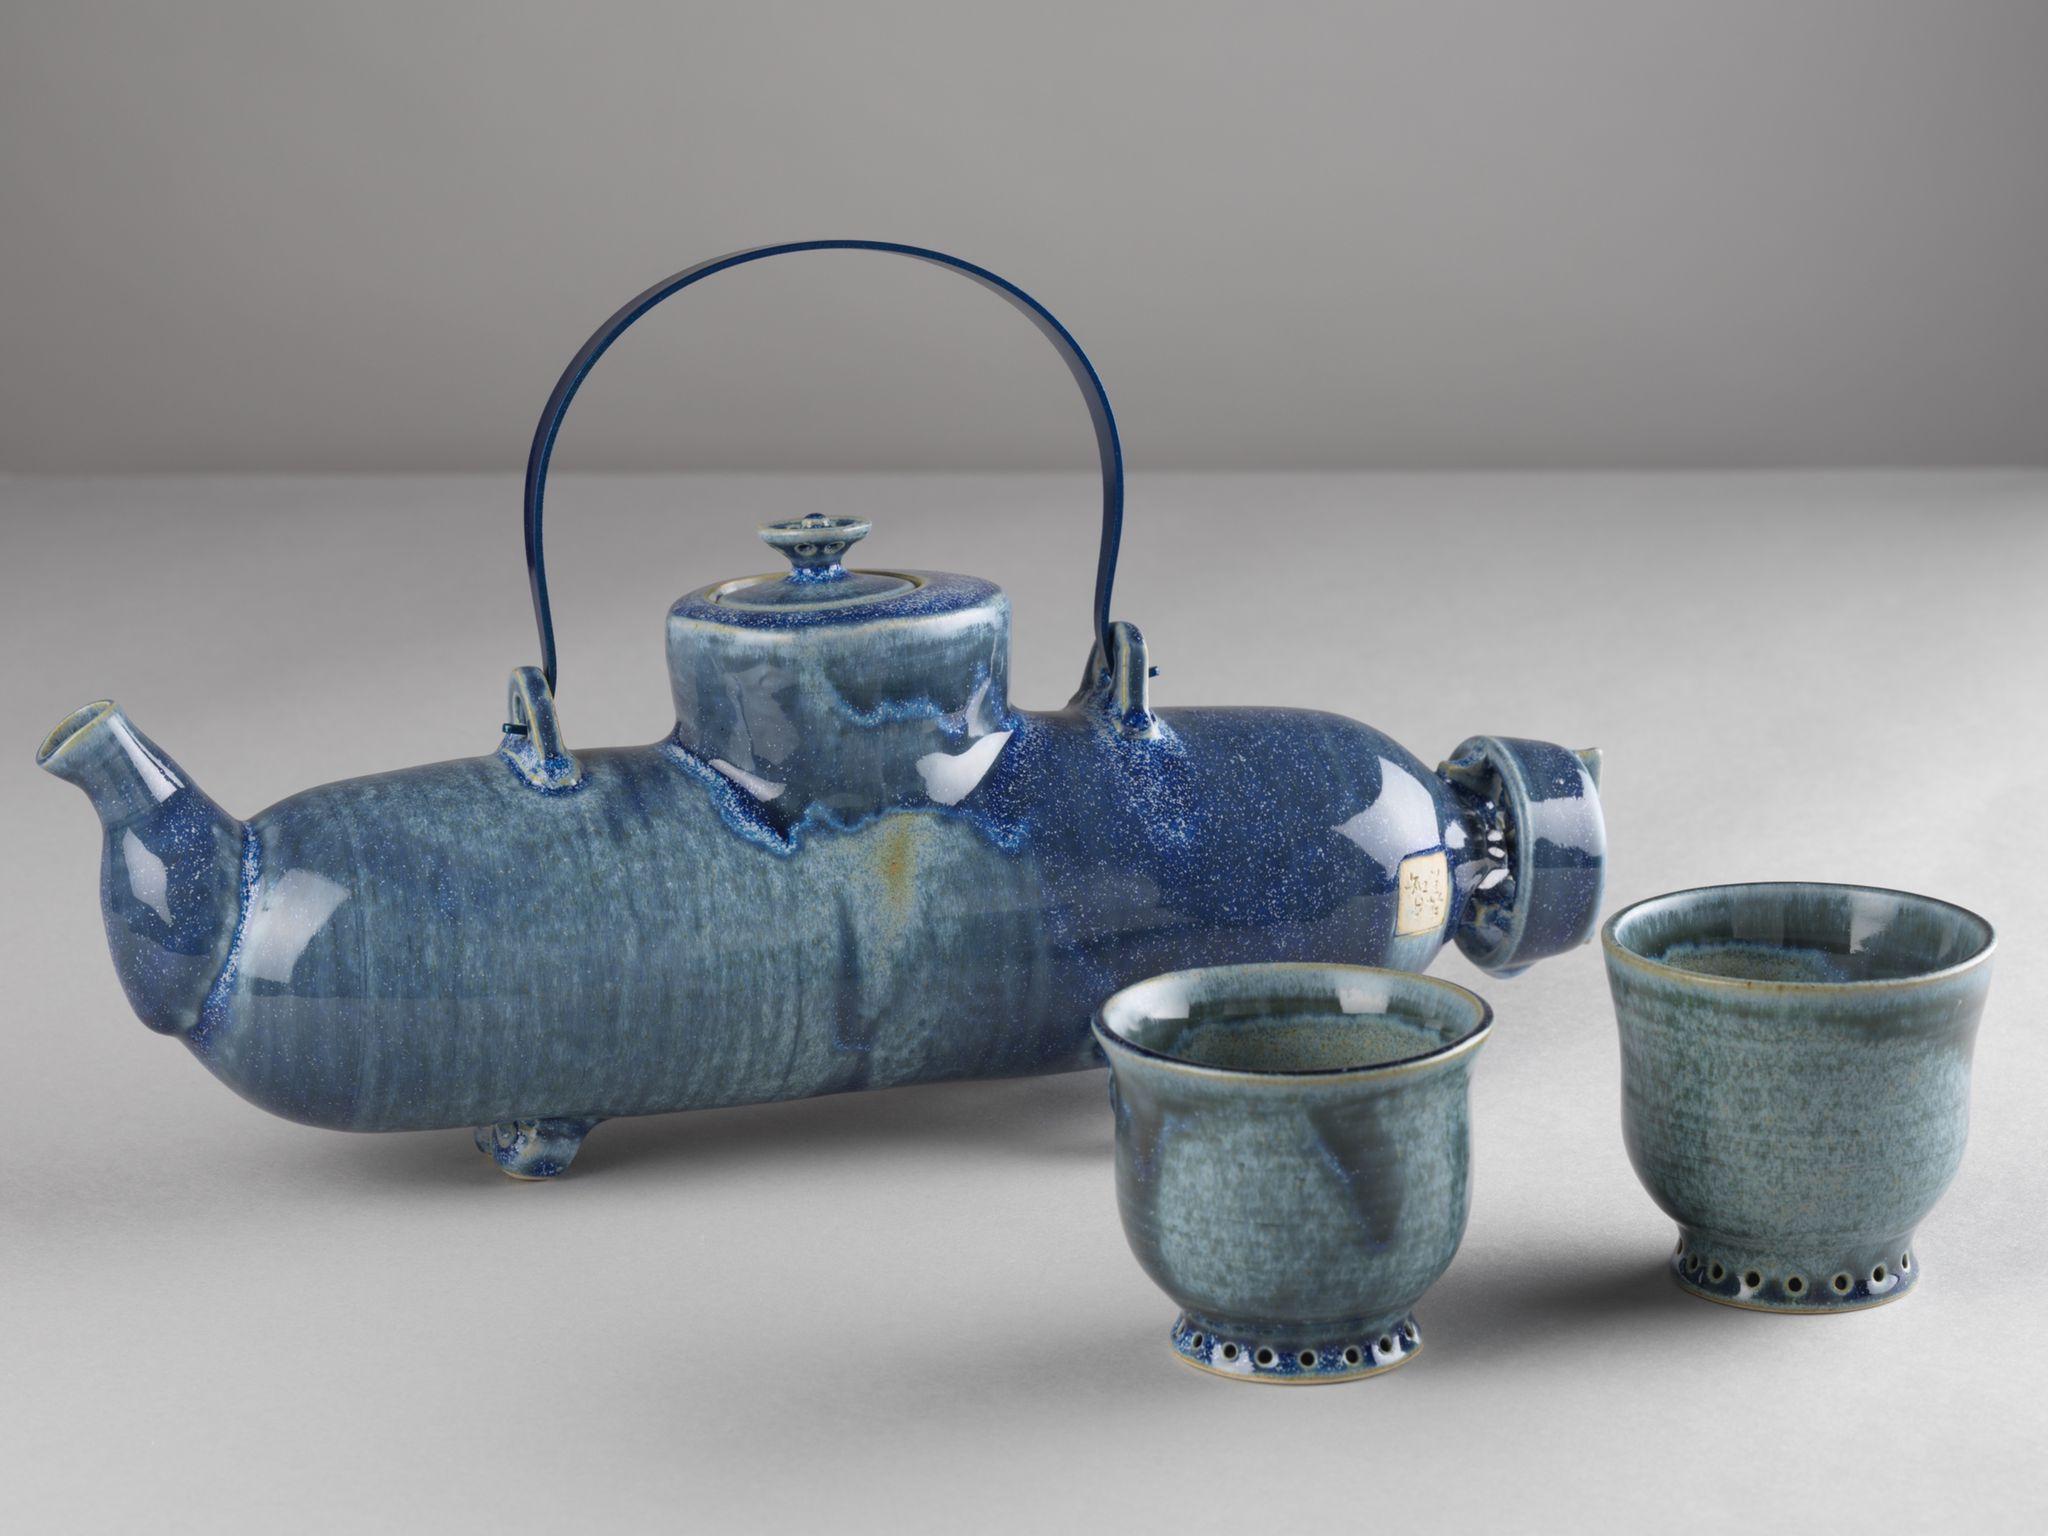 茶具文物馆现正举行「陶瓷茶具创作展览2021」。图示公开组季军得主司徒健的作品《大海航行靠舵手》。